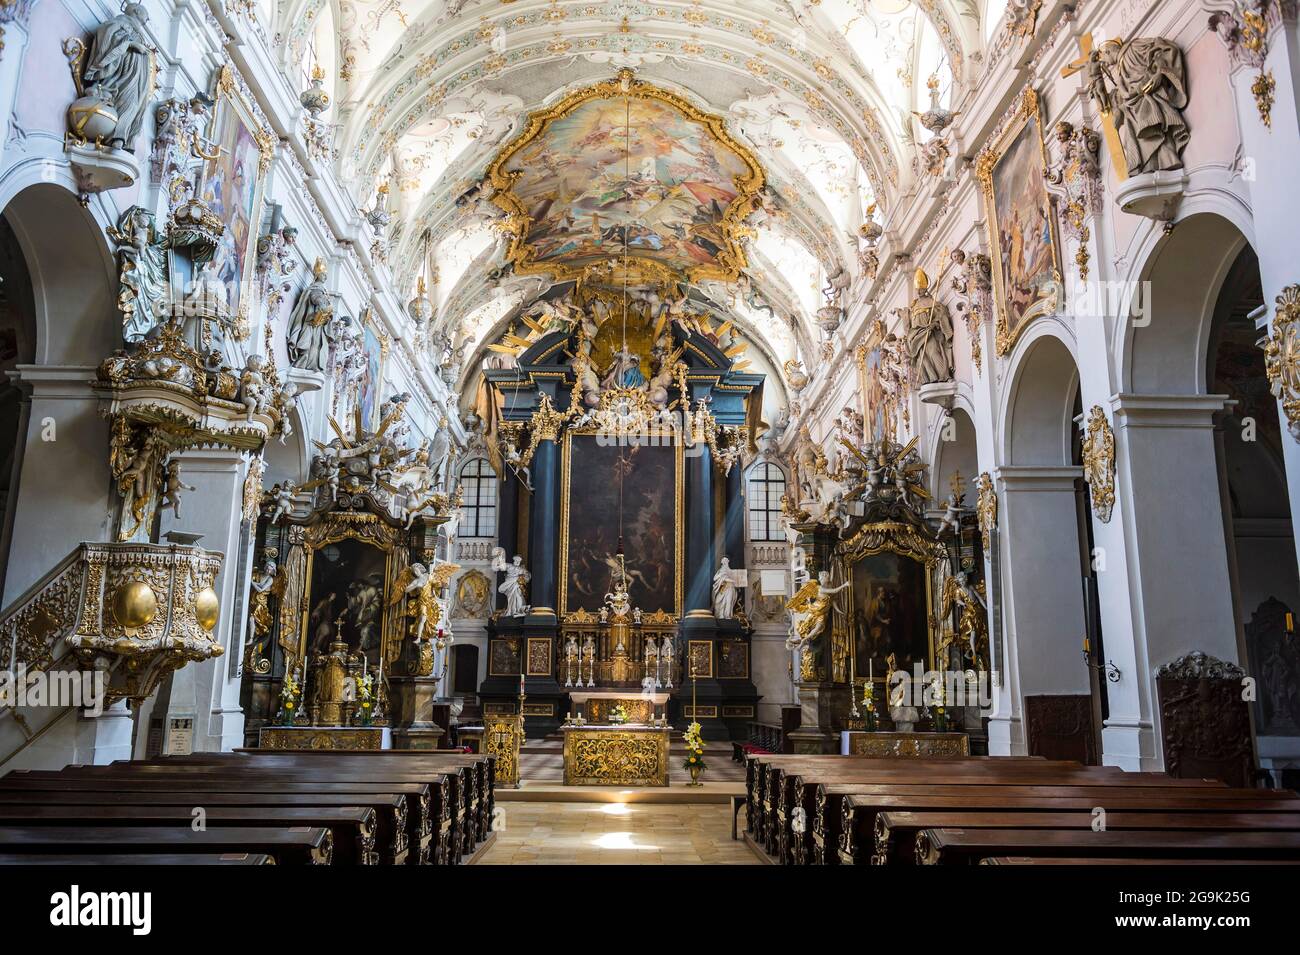 All'interno della basilica romanica di San Emmeram (abbazia) ora conosciuta come Schloss Thurn und Taxis, patrimonio dell'umanità dell'UNESCO, Ratisbona, Baviera Foto Stock